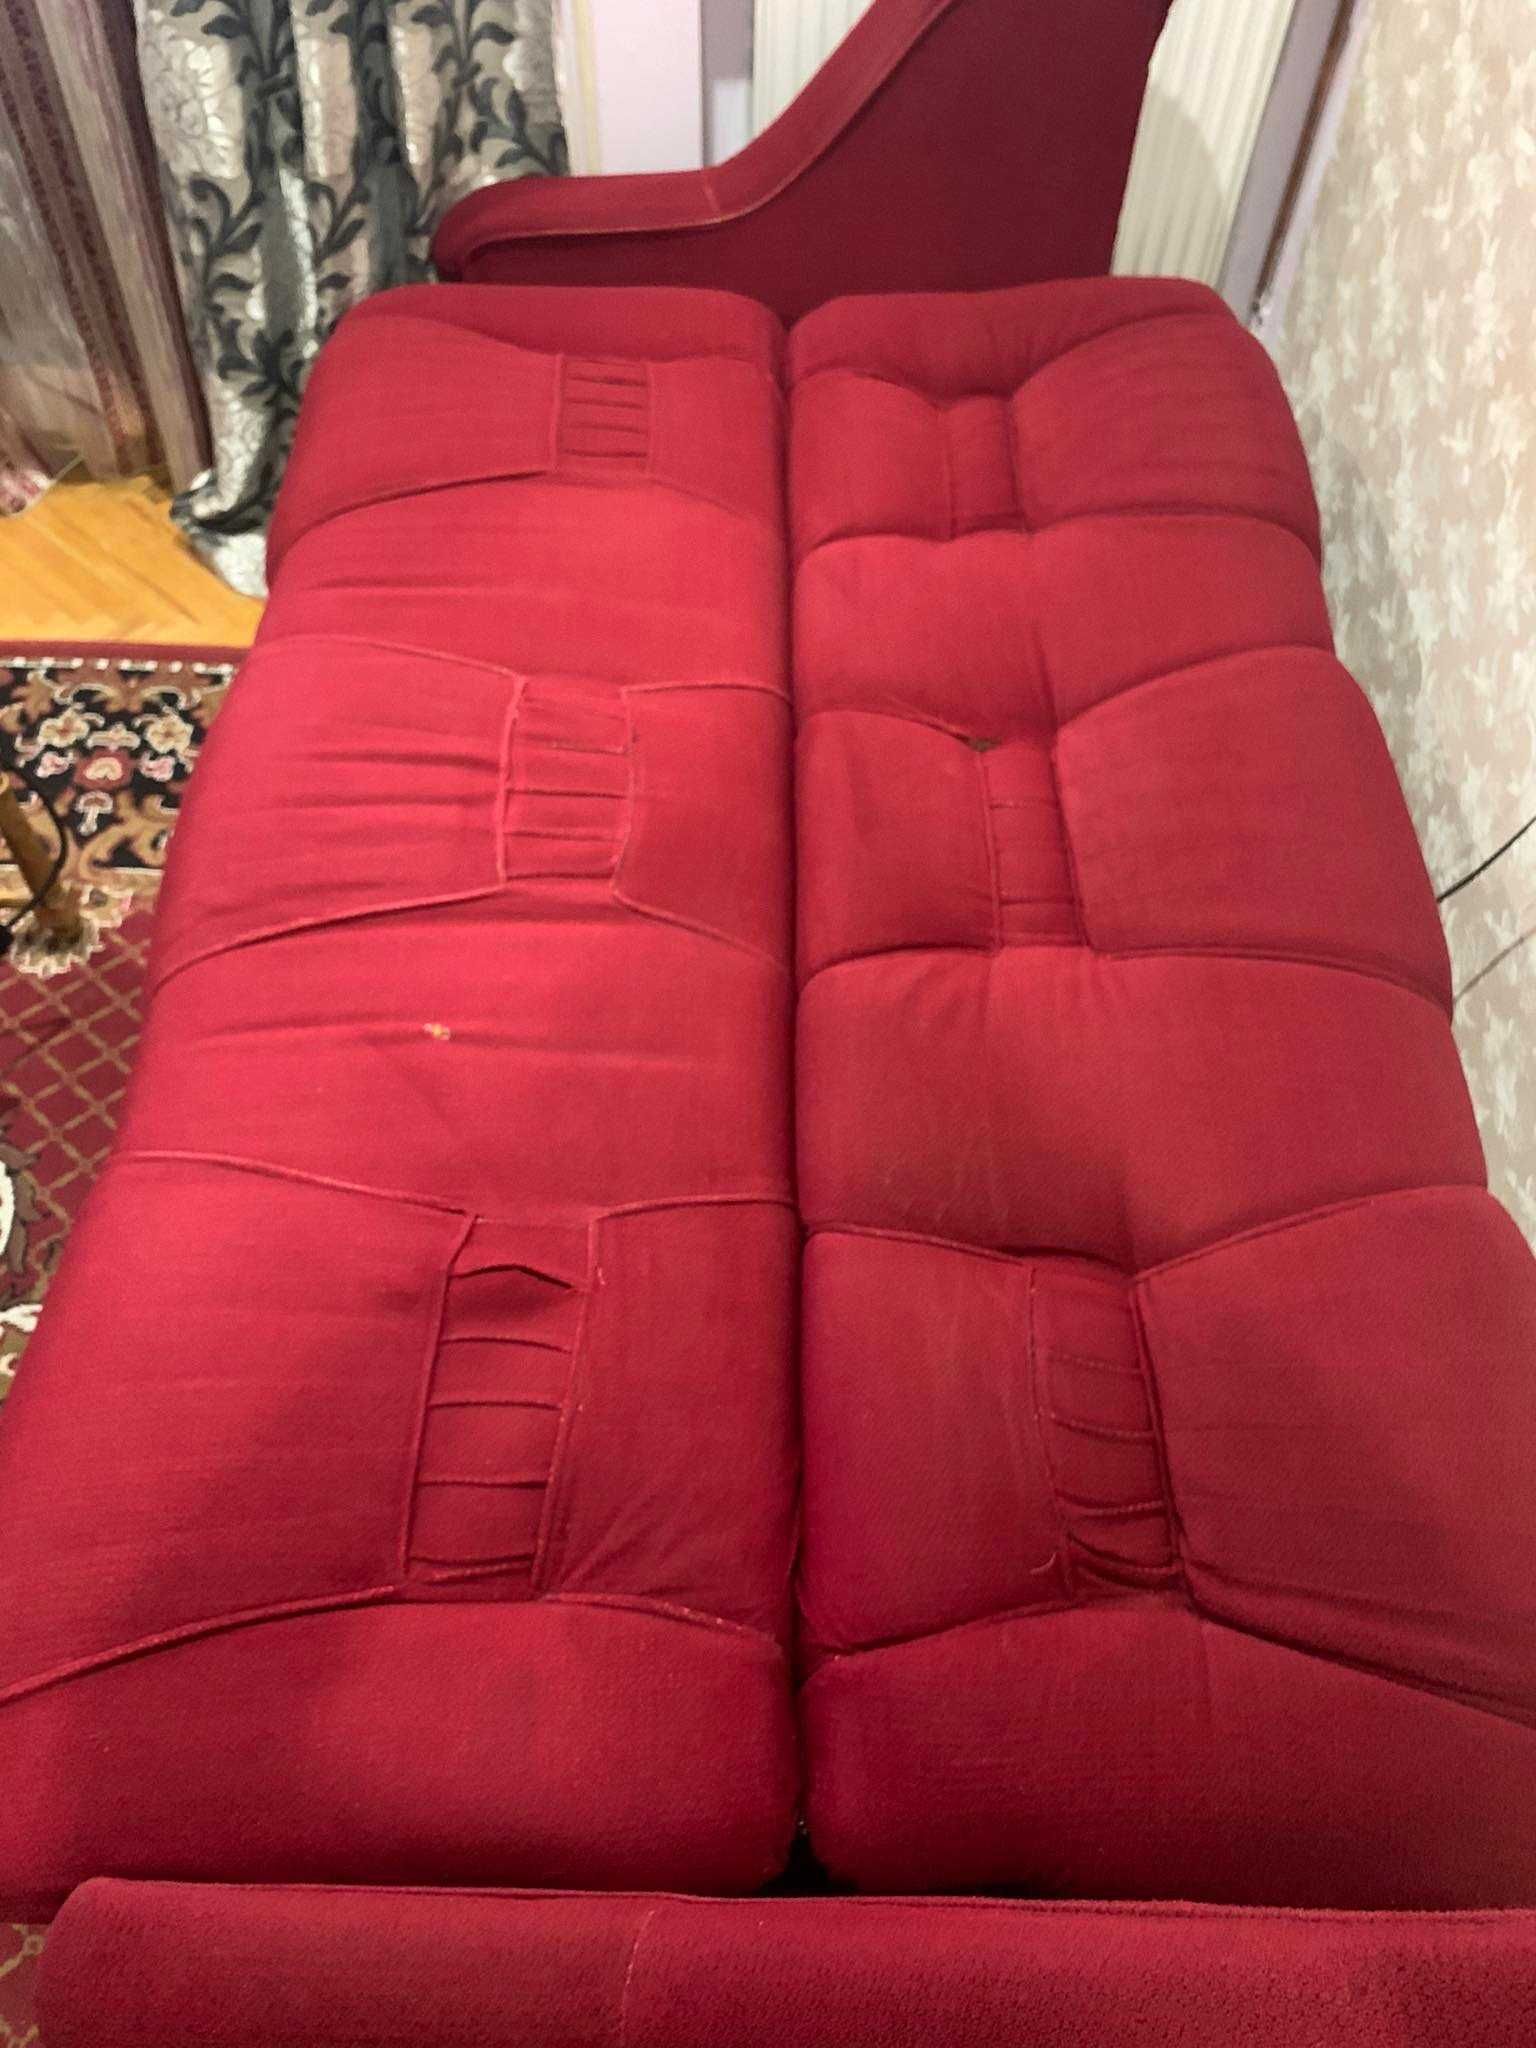 Продається набір із двох диванів і крісла. ціна 4200гр. торг.